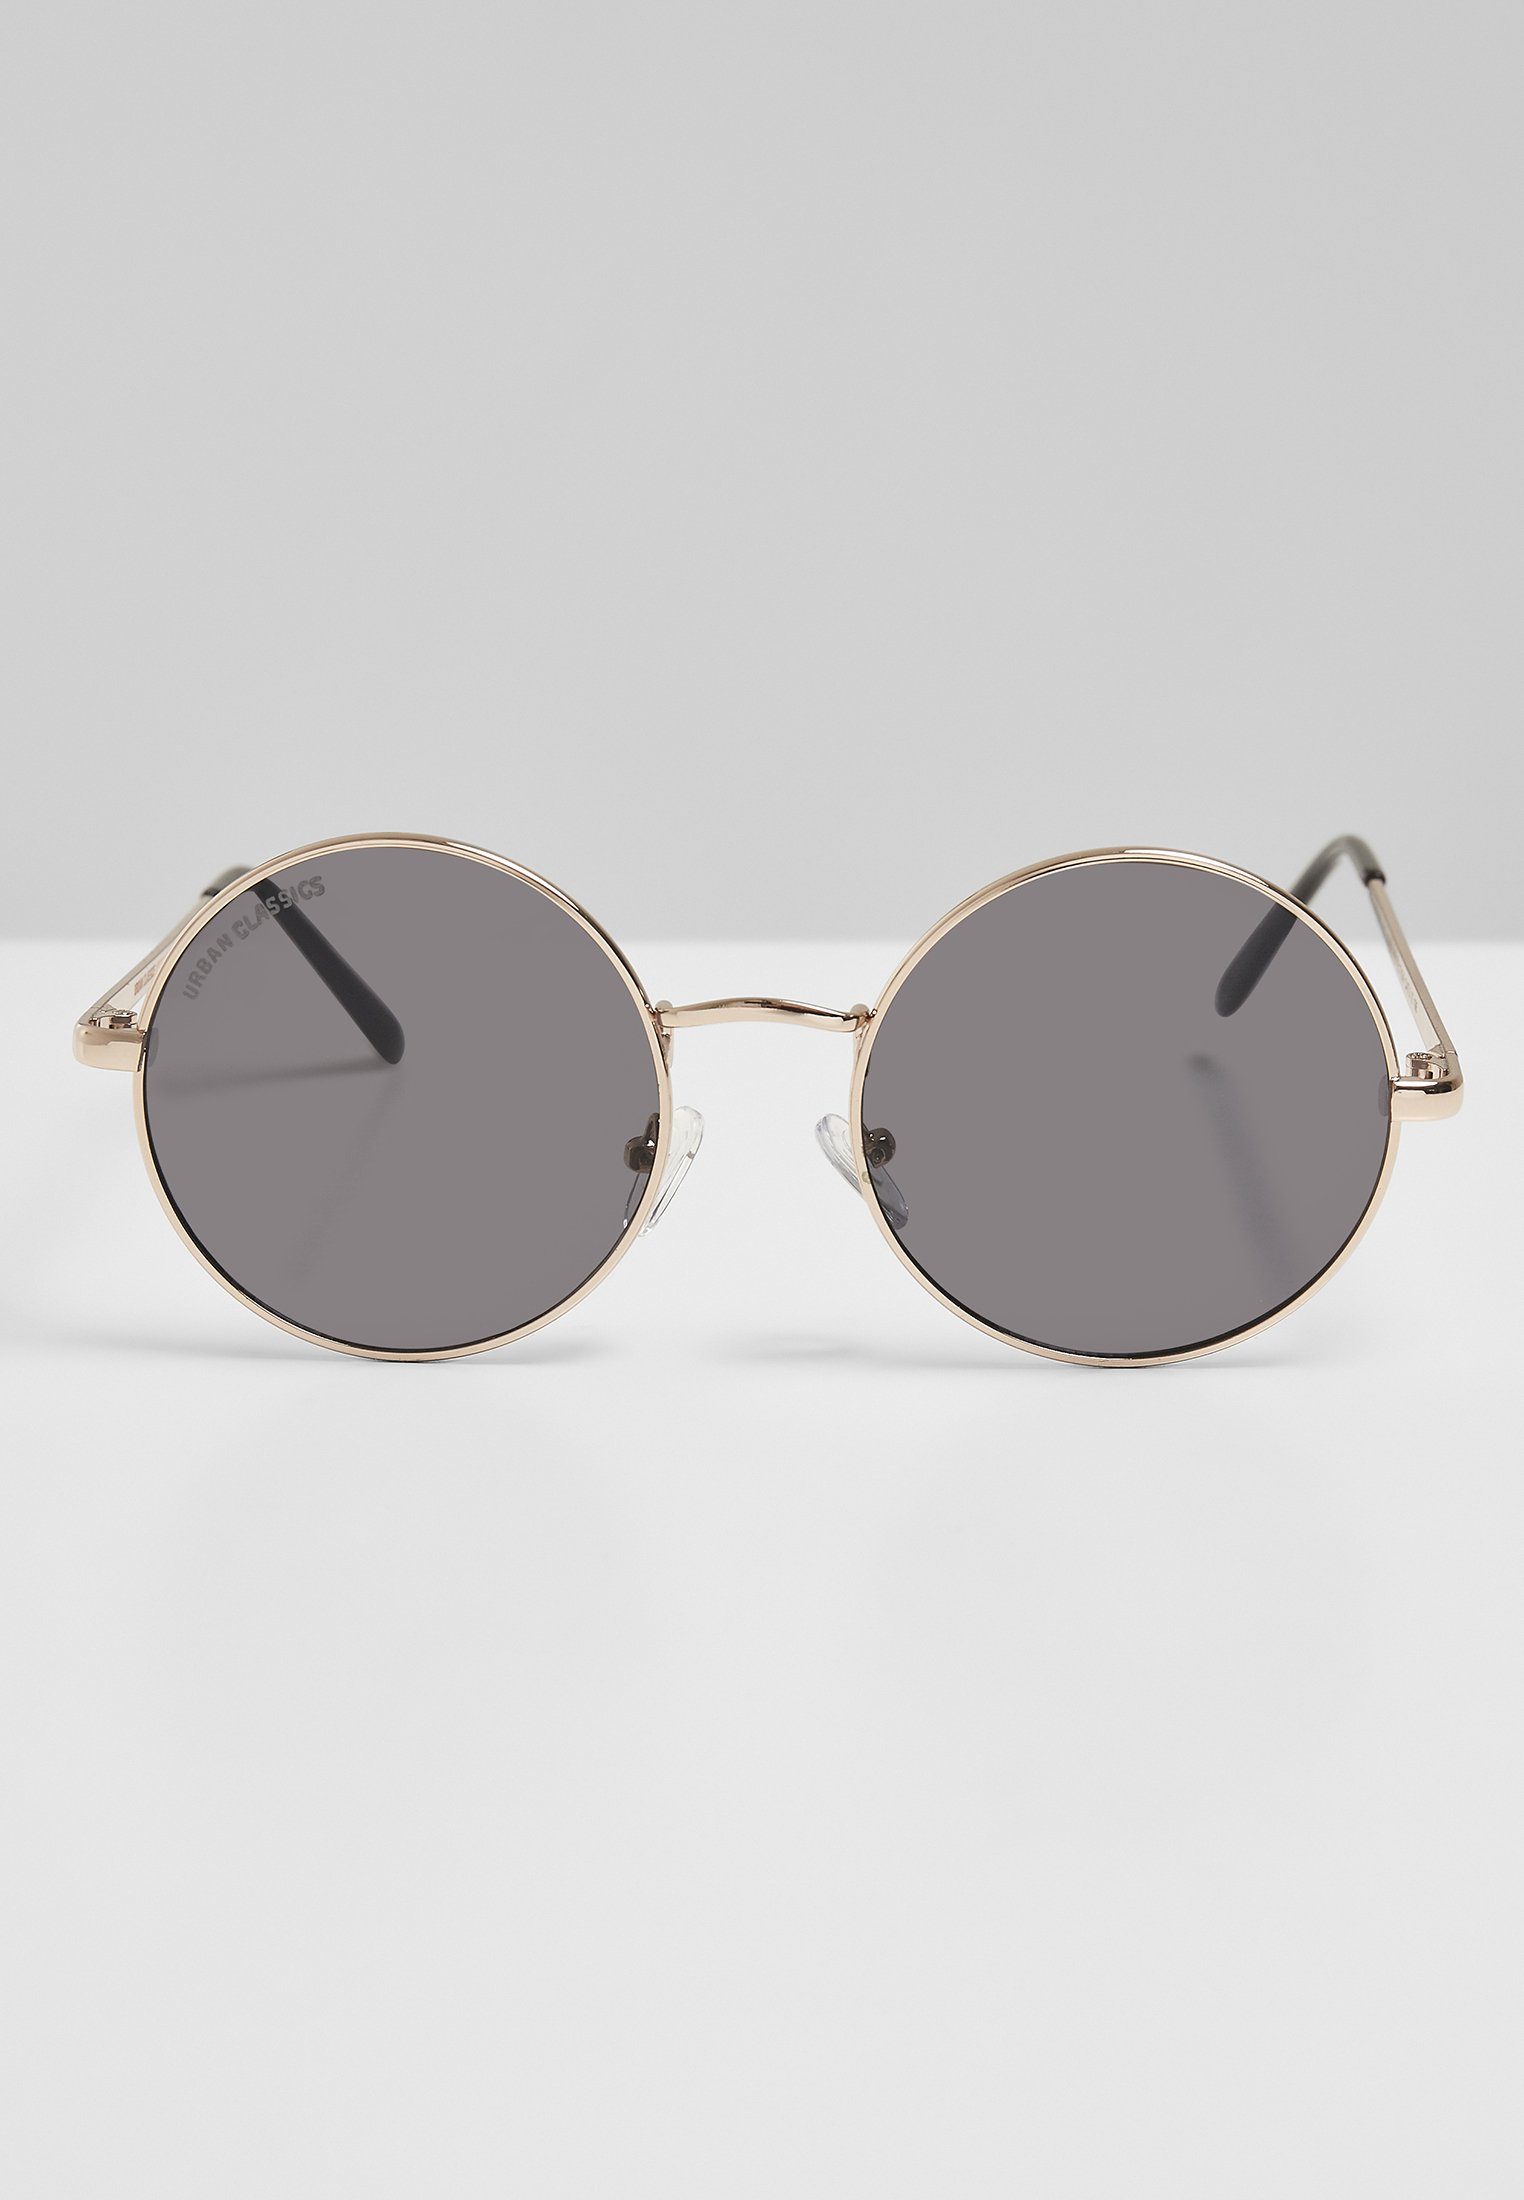 URBAN CLASSICS Sunglasses Sonnenbrille gold/blk Accessoires 107 UC